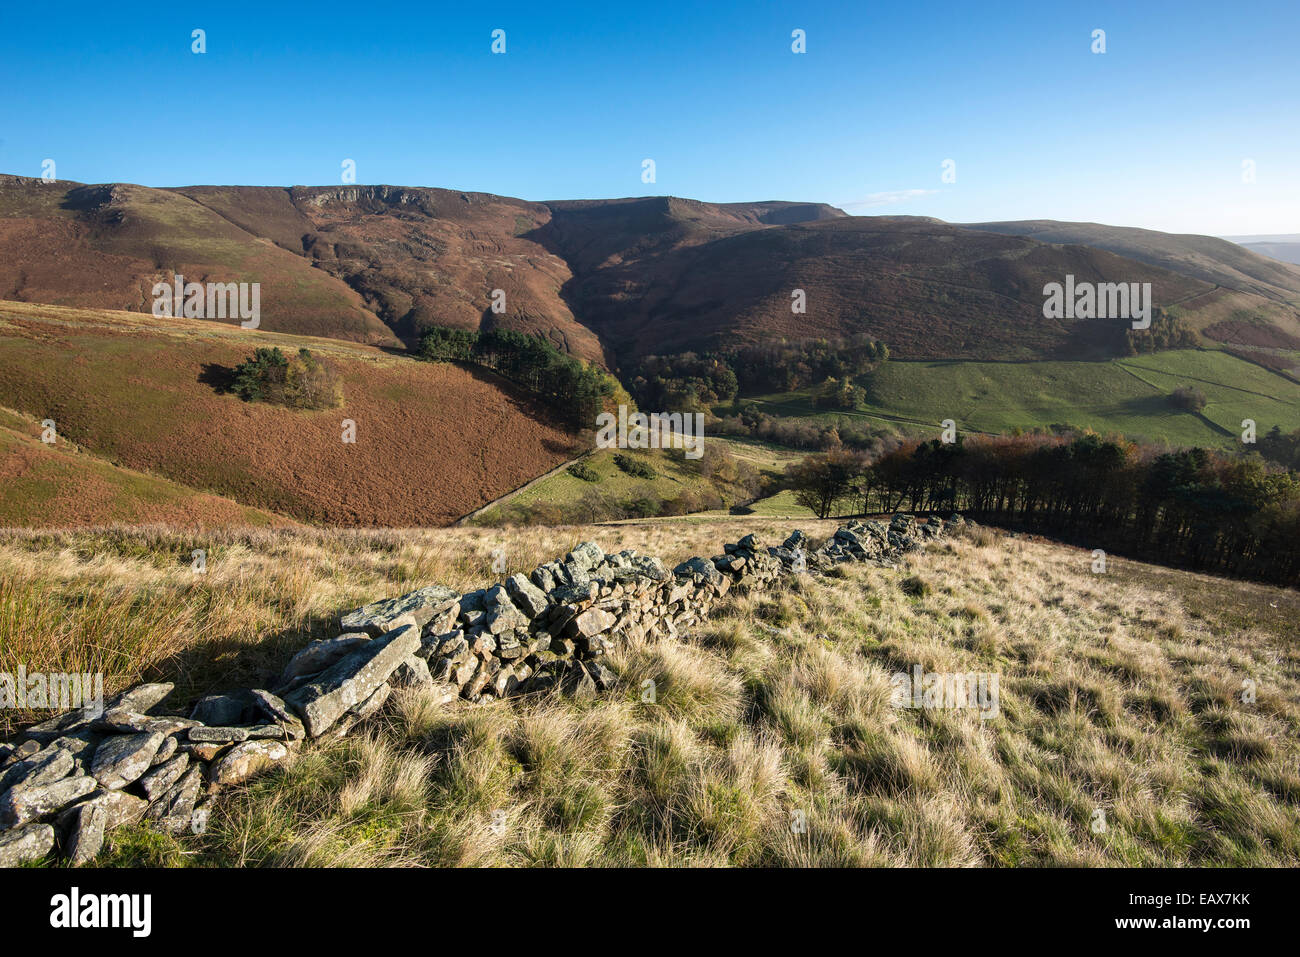 Peak District Landschaft am Grinbrooks Clough, Edale im Peak District. Herbstfärbung an den Berghängen. Stockfoto